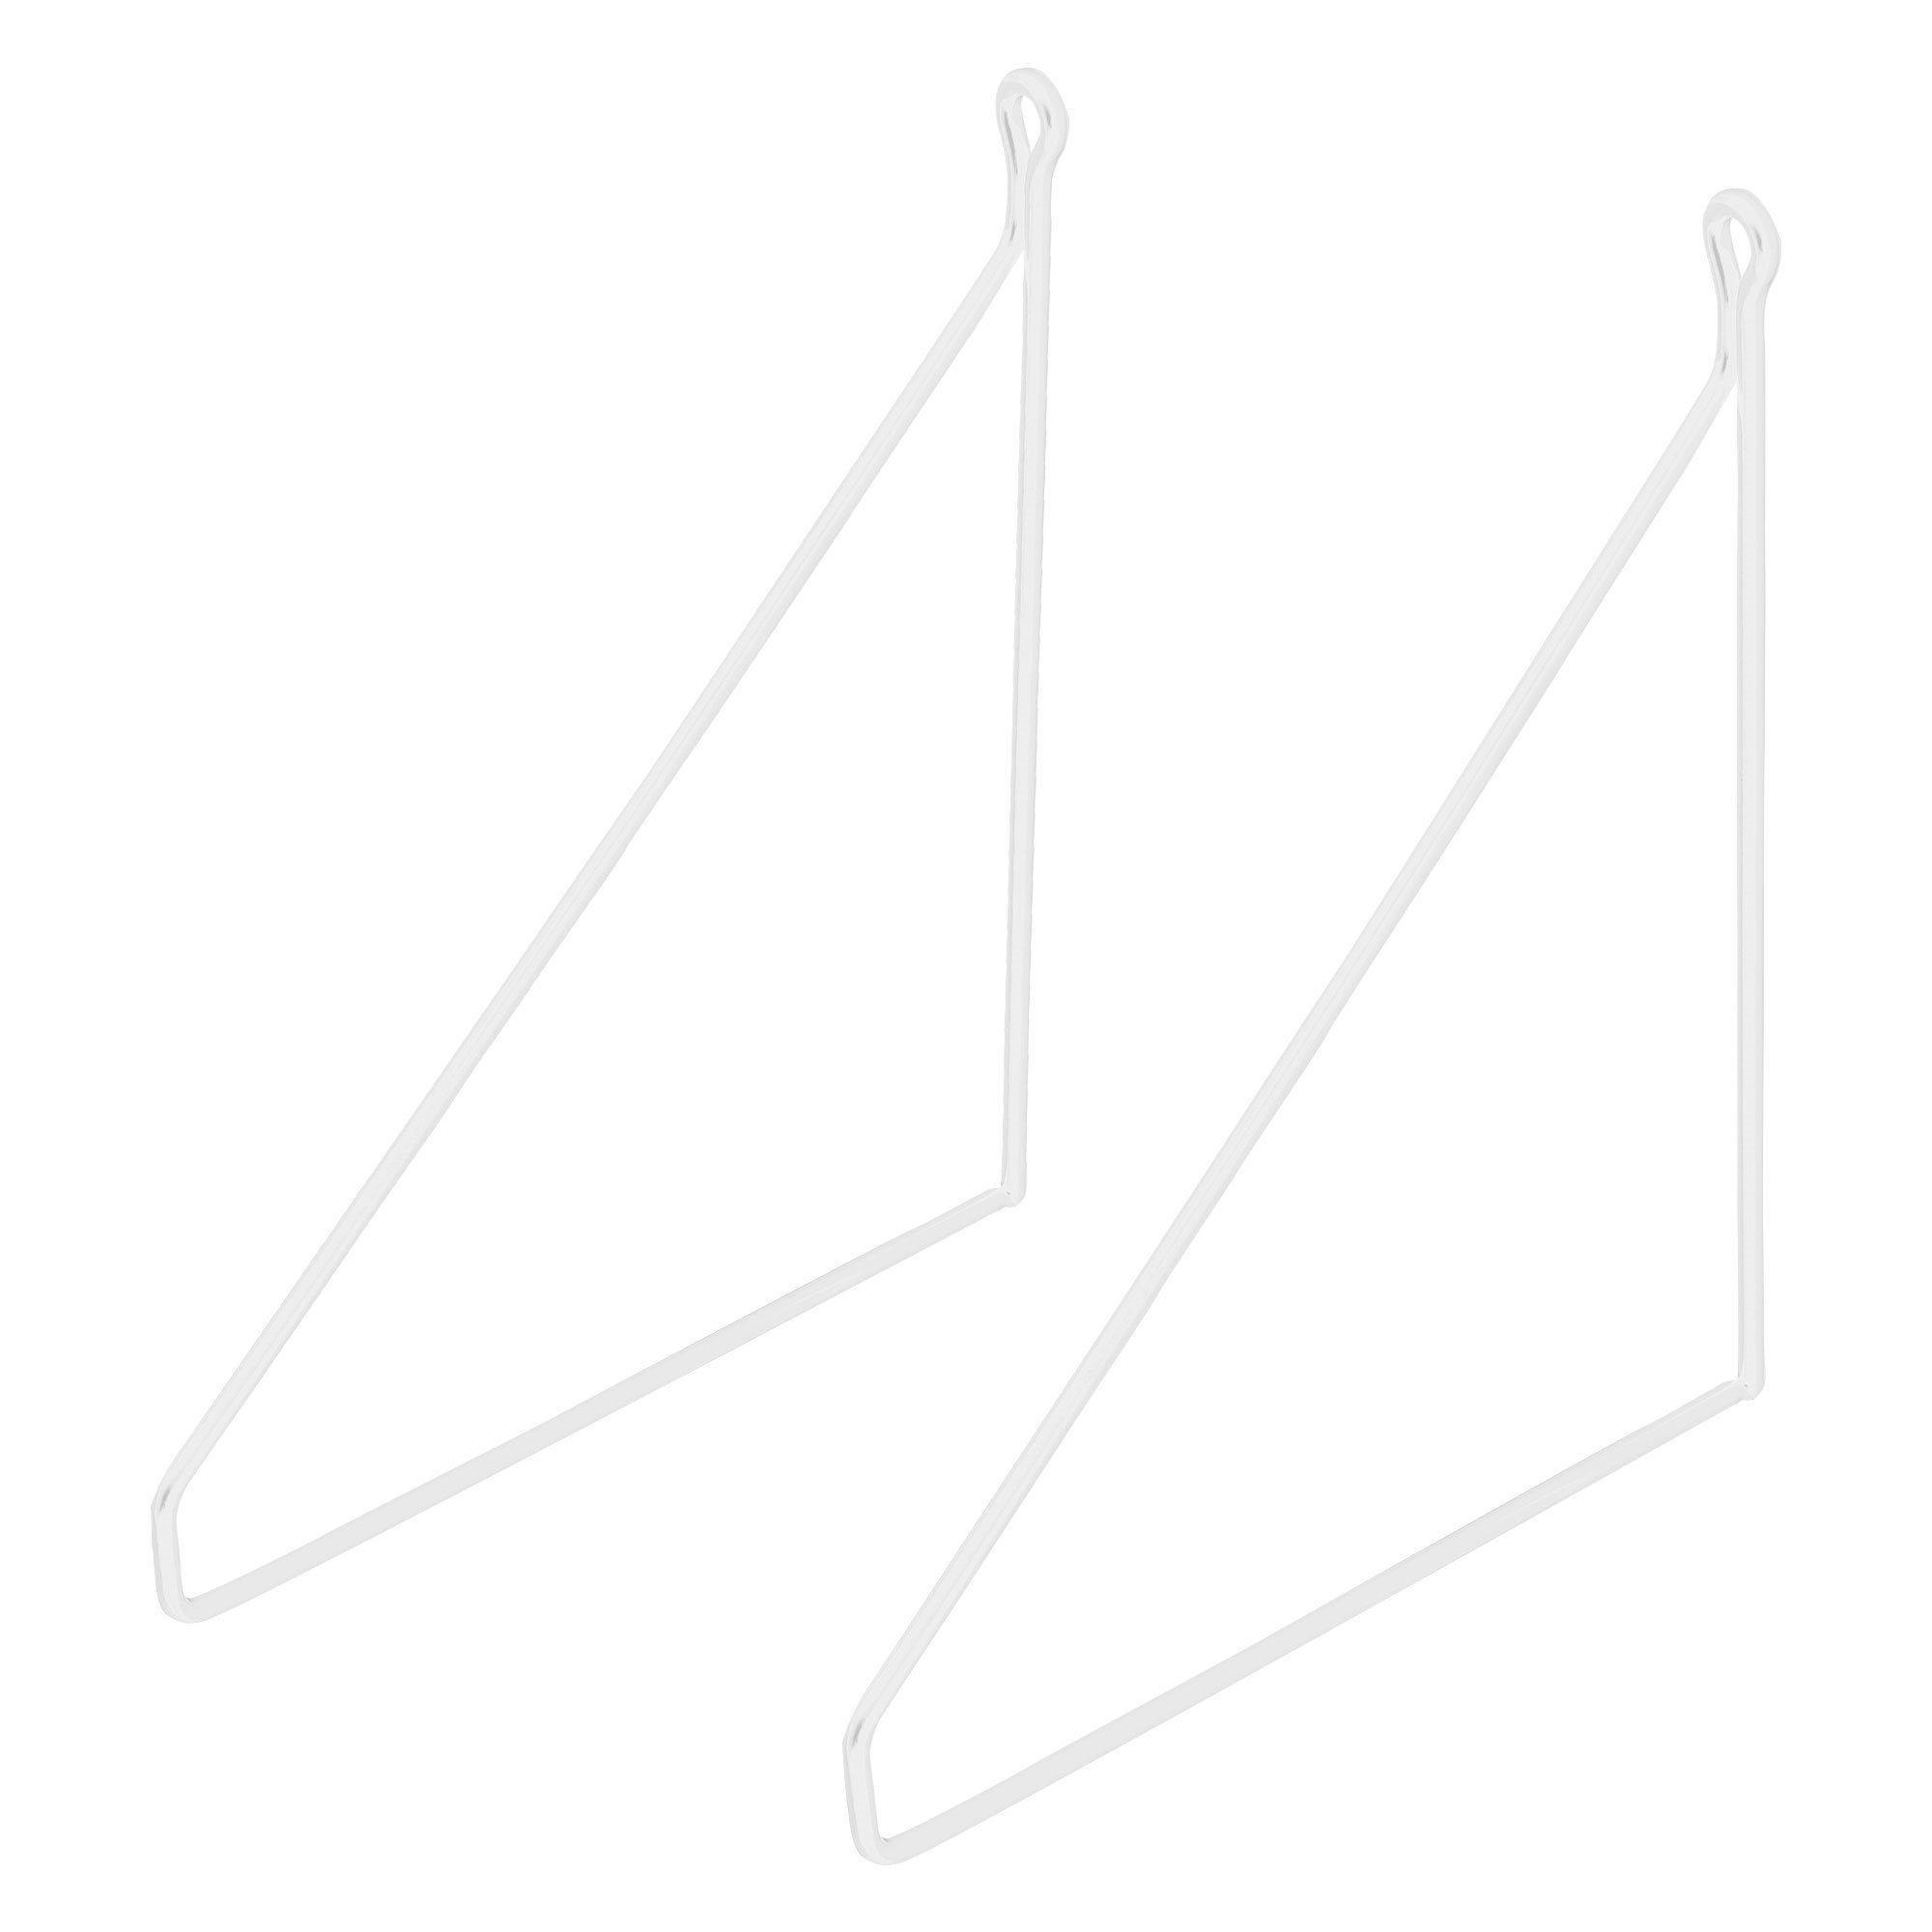 Draht Wandmontage Weiß Regal Metall Regalhalterung Wandhalterung Dreieckig 2 Regalträger, Regalwinkel ML-DESIGN 200mm Schwebe Stück